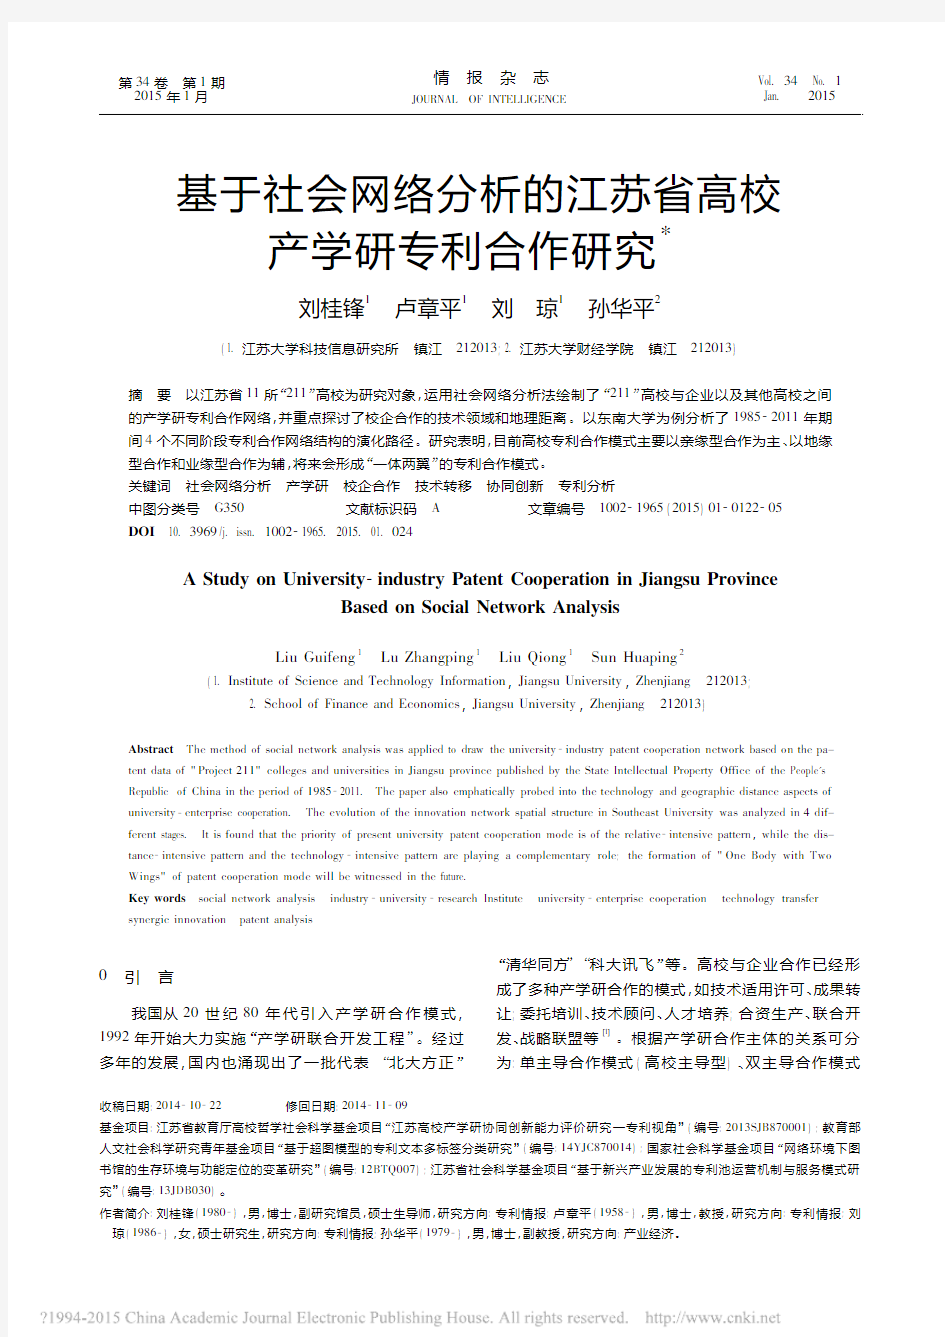 2015-基于社会网络分析的江苏省高校产学研专利合作研究